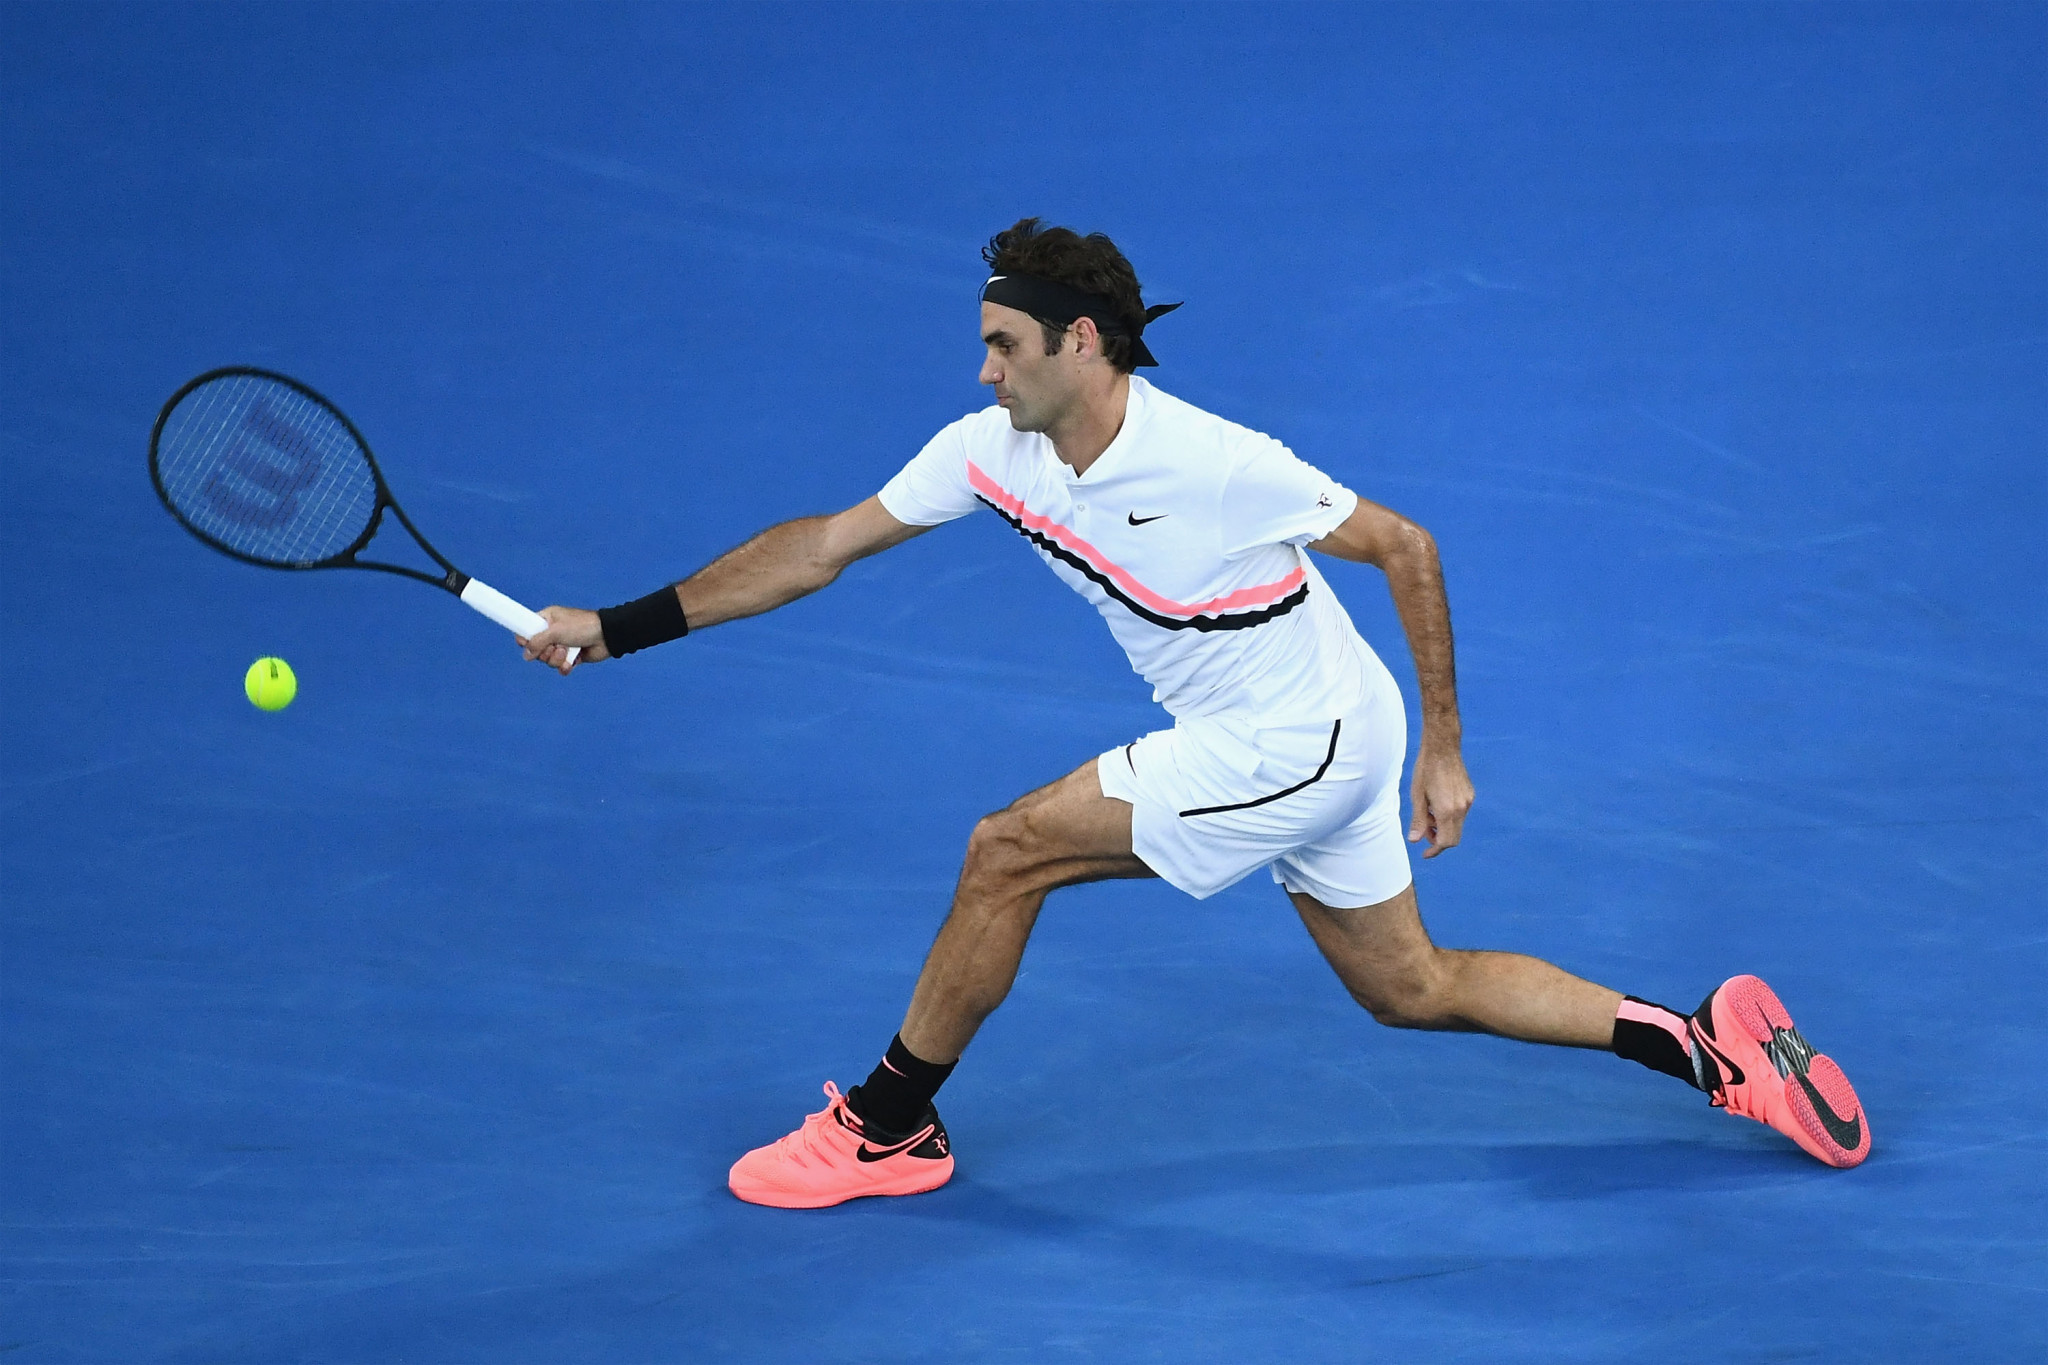 Defending champion Roger Federer knocked out Slovenia's former Brit  Aljaž Bedene ©Getty Images